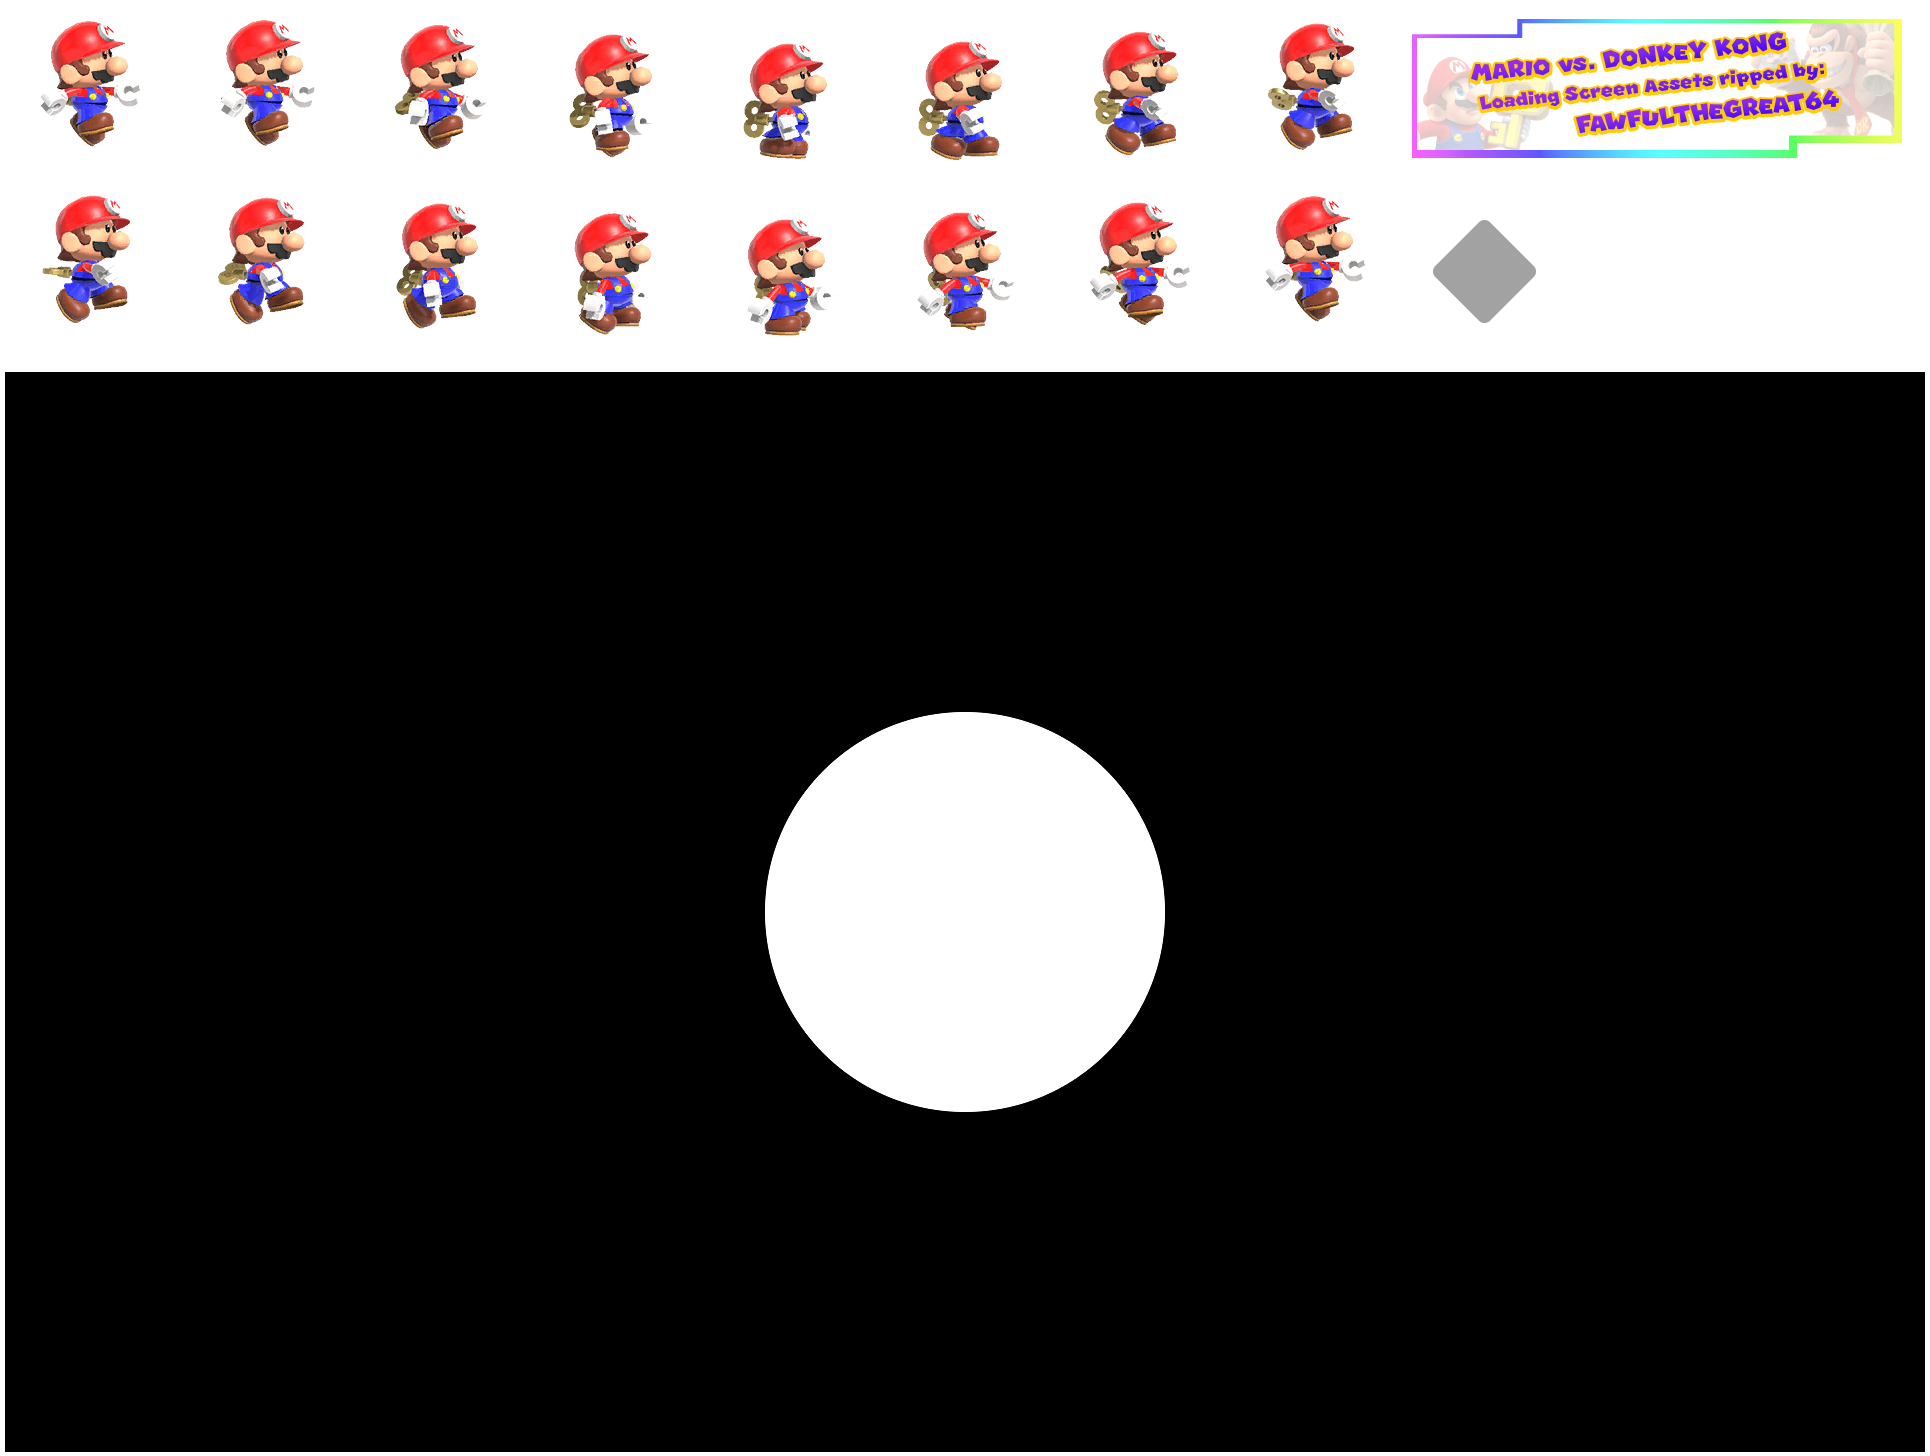 Mario vs. Donkey Kong - Loading Screens